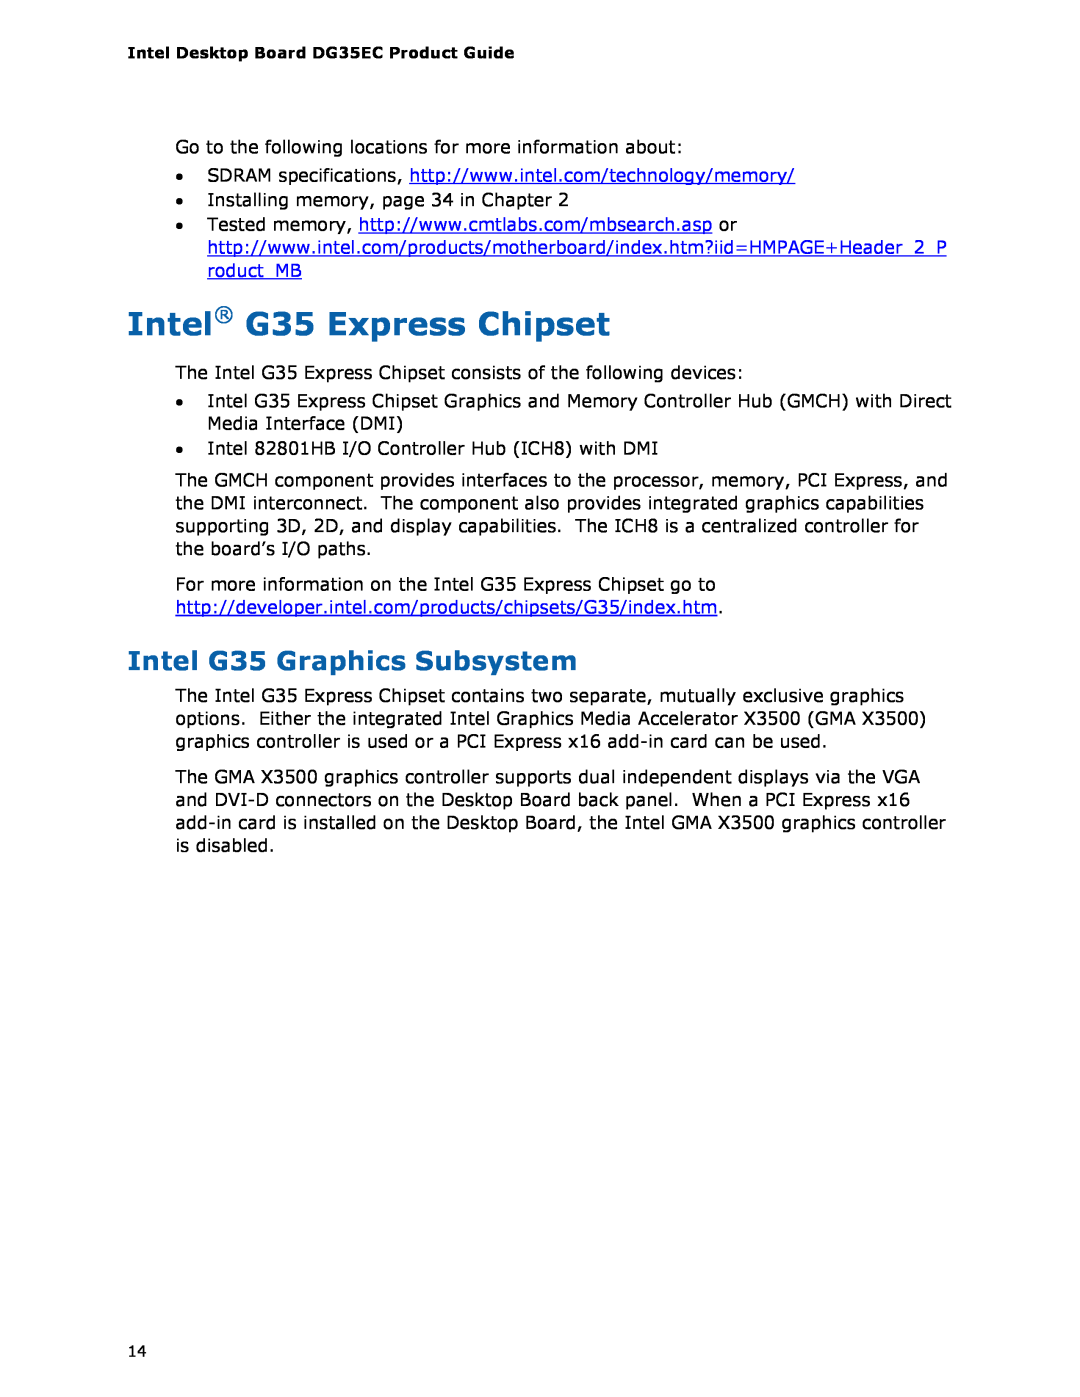 Intel Intel Desktop Board, DG35EC manual Intel G35 Express Chipset, Intel G35 Graphics Subsystem 